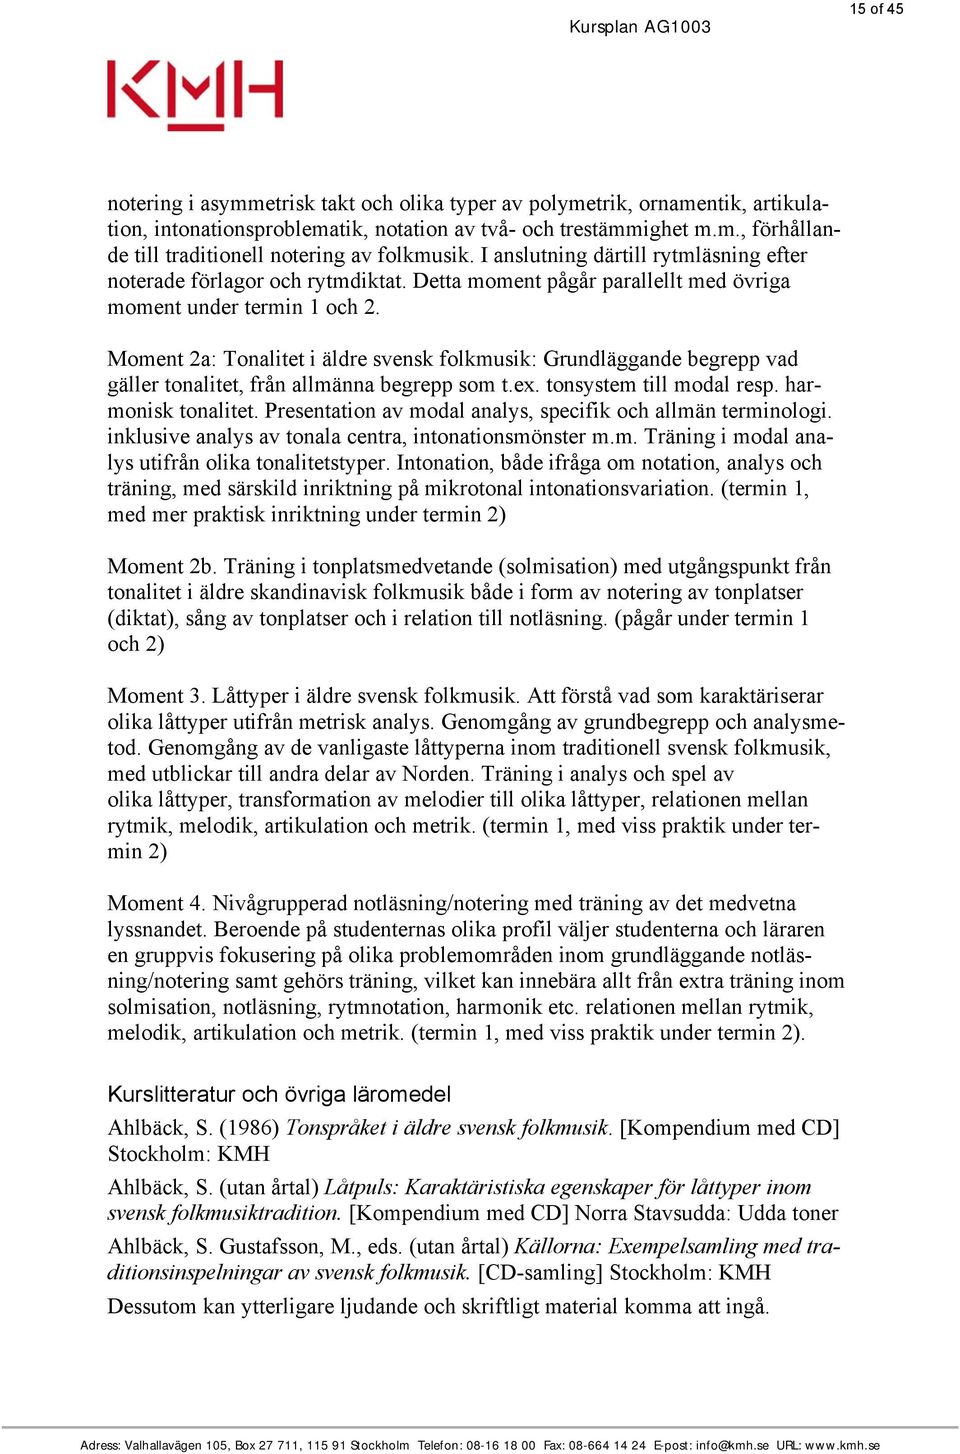 Moment 2a: Tonalitet i äldre svensk folkmusik: Grundläggande begrepp vad gäller tonalitet, från allmänna begrepp som t.ex. tonsystem till modal resp. harmonisk tonalitet.